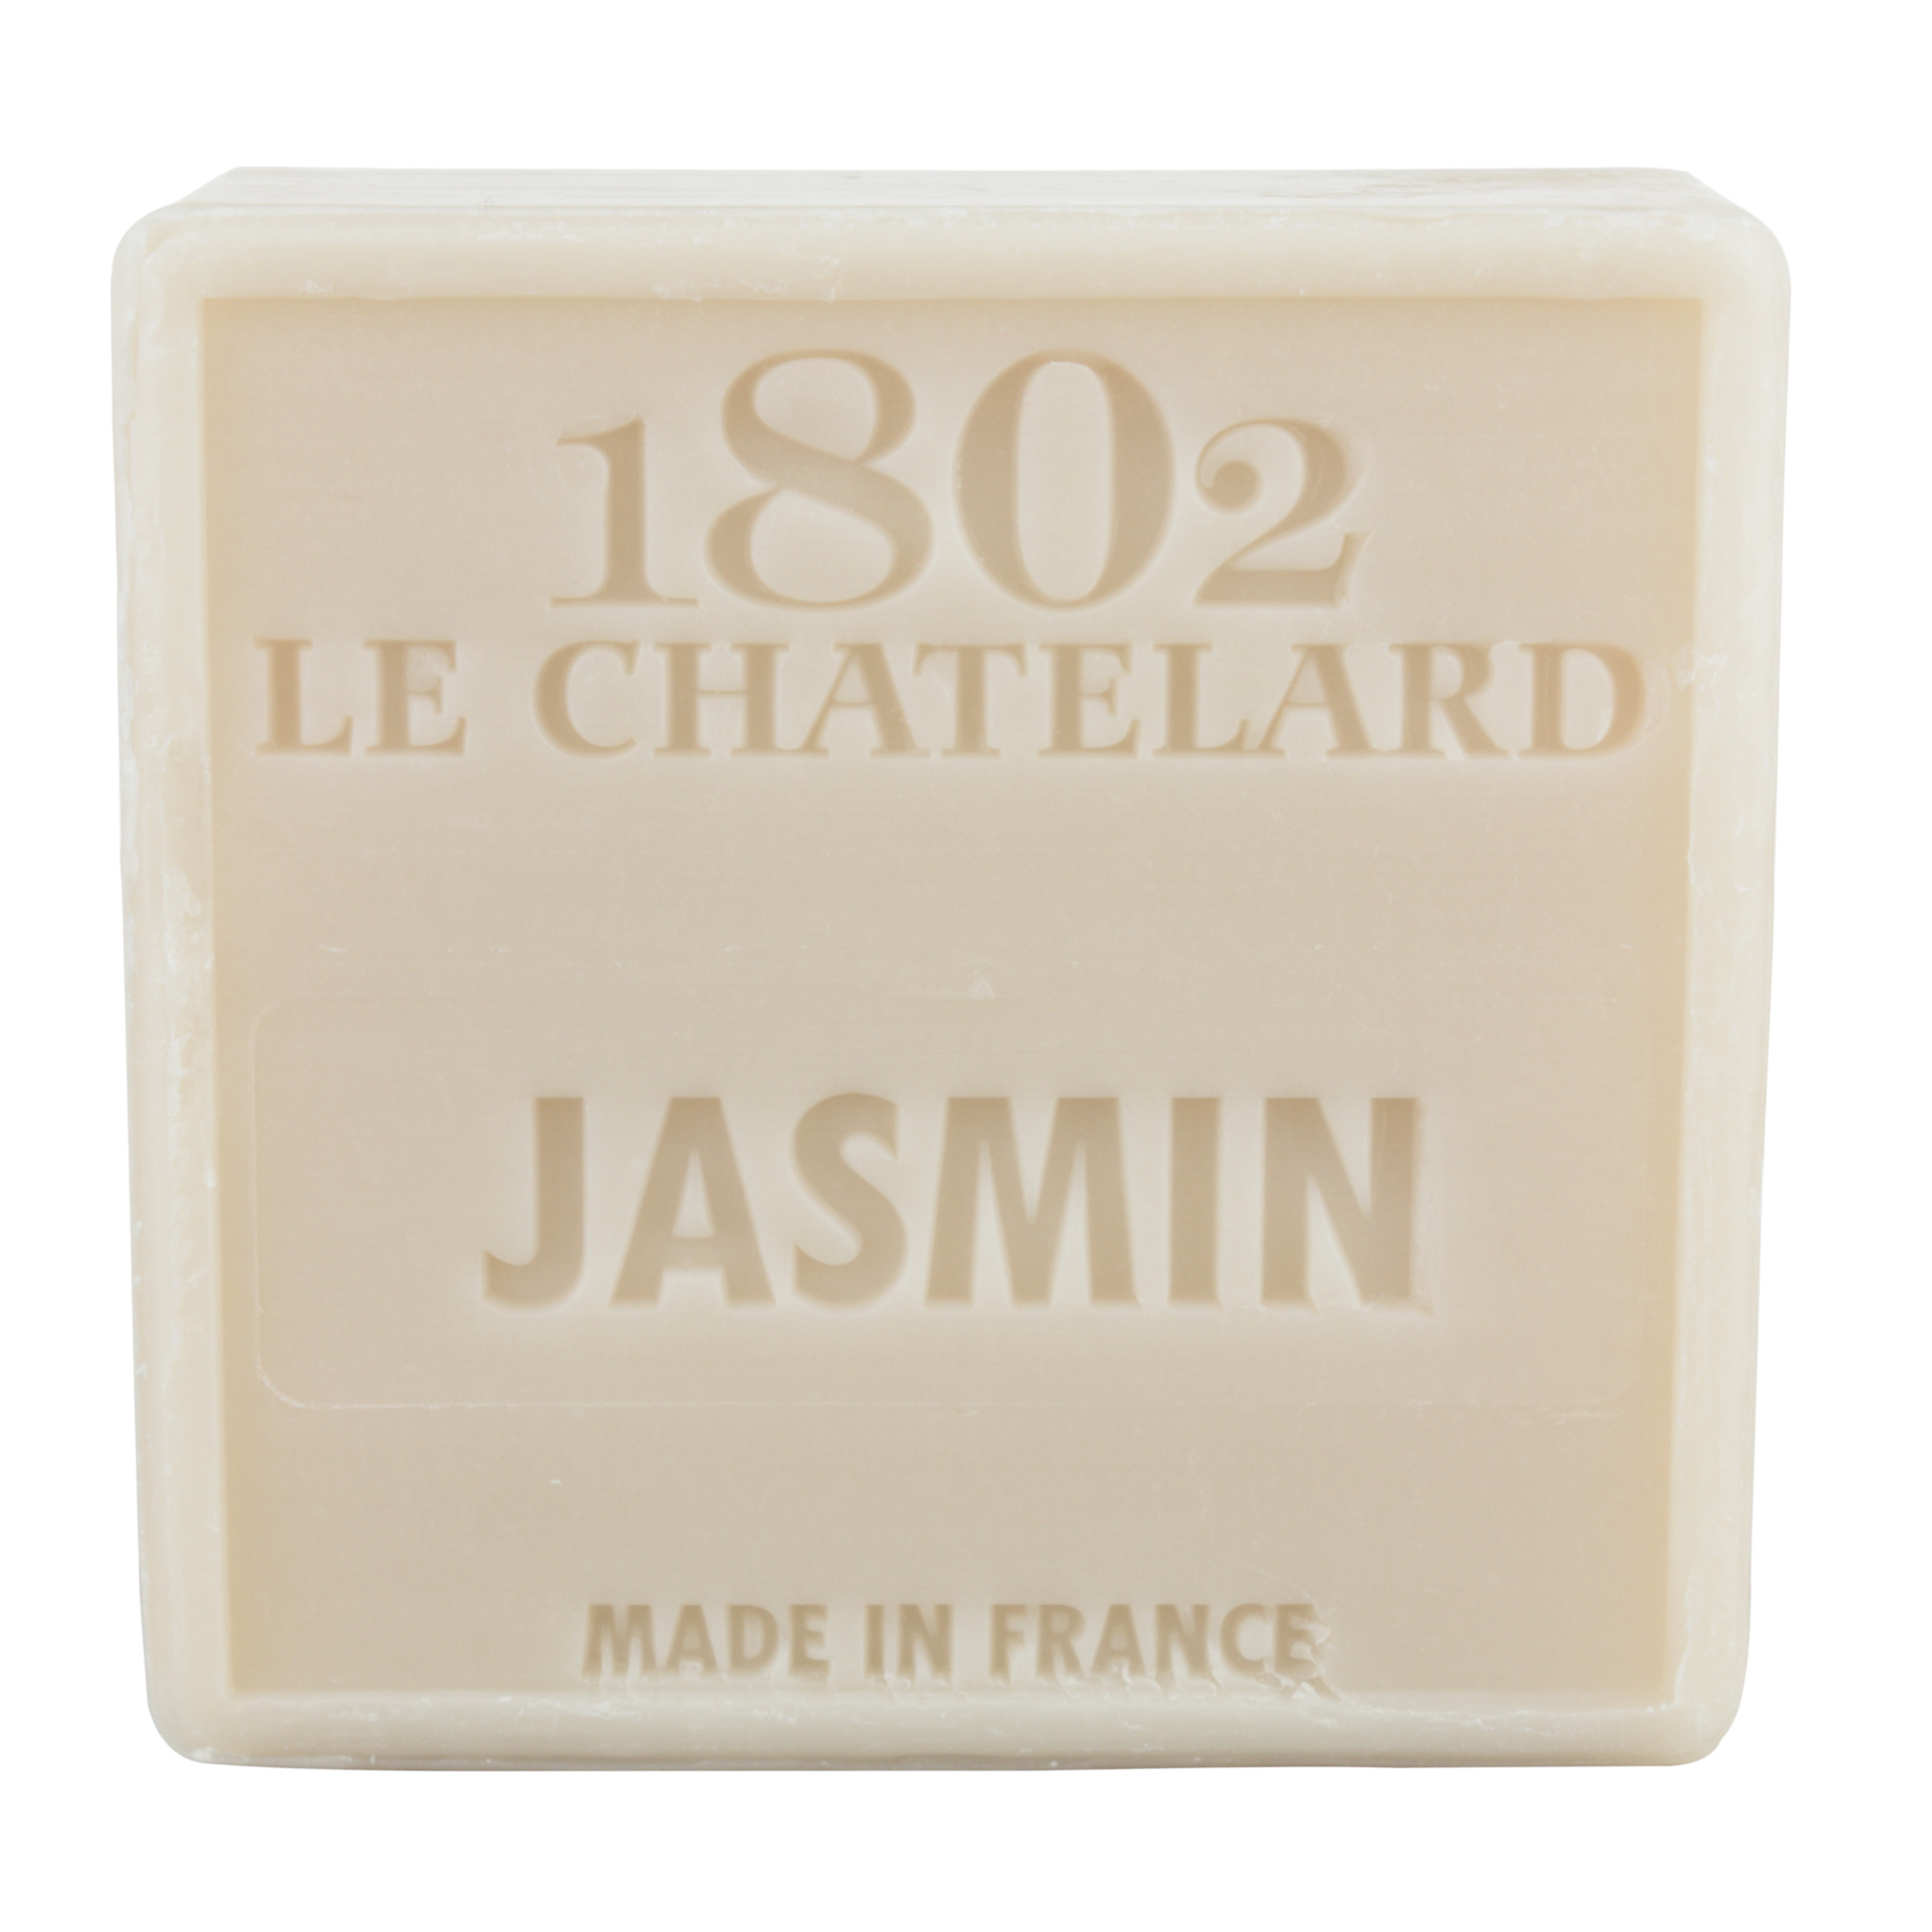 Mydło marsylskie Jaśmin 100g Le Chatelard 1802 bez oleju palmowego